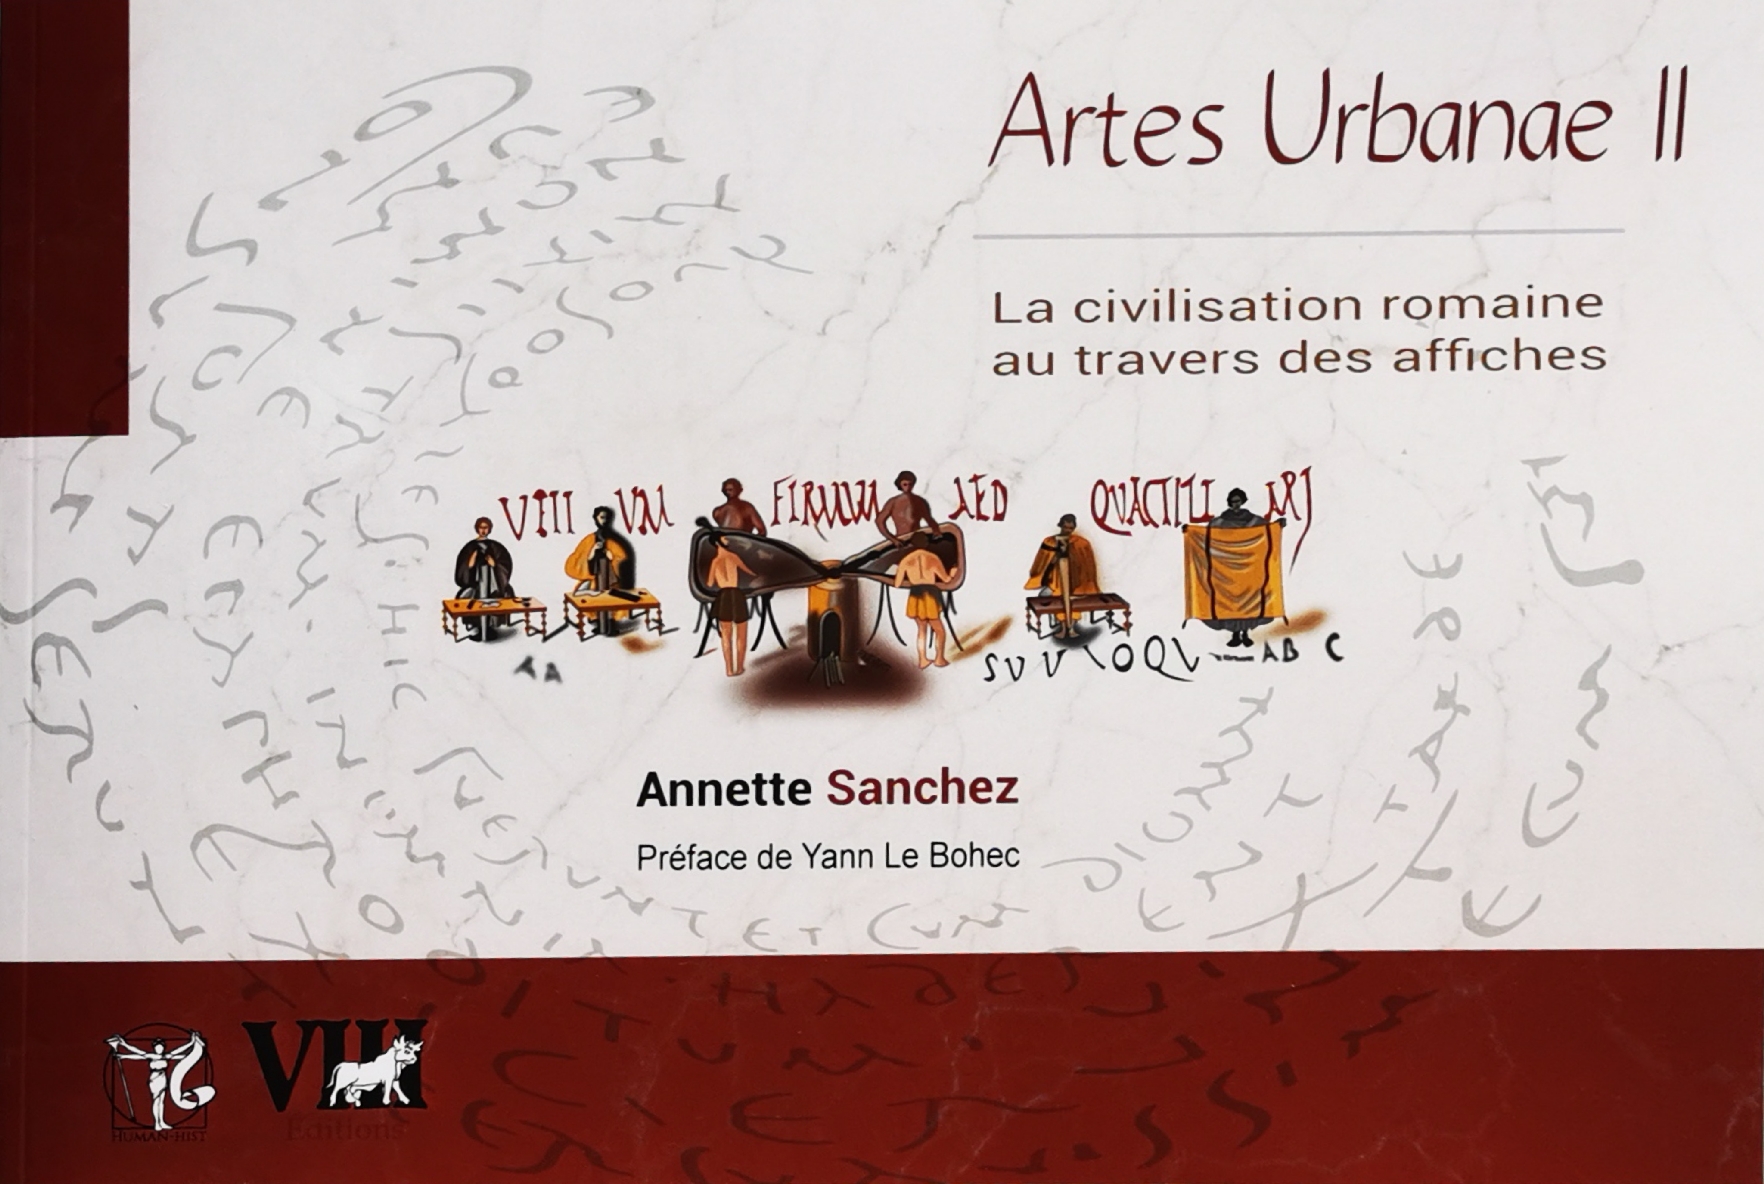 Artes Urbanae II. La civilisation romaine au travers des affiches, 2021.